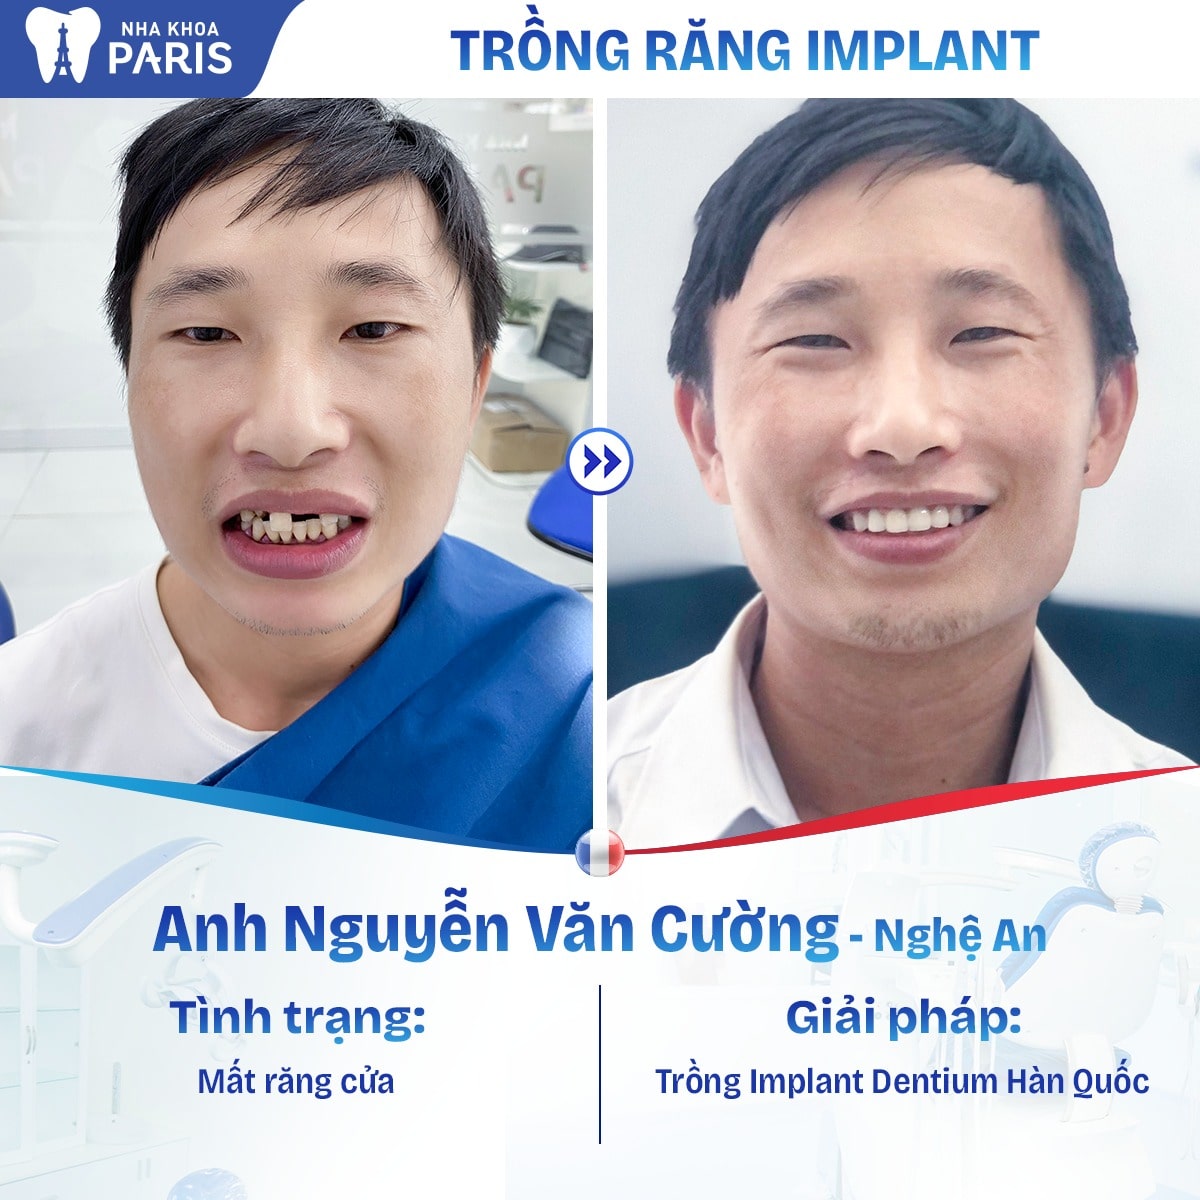 Trồng răng Implant giúp cải thiện tính thẩm mỹ